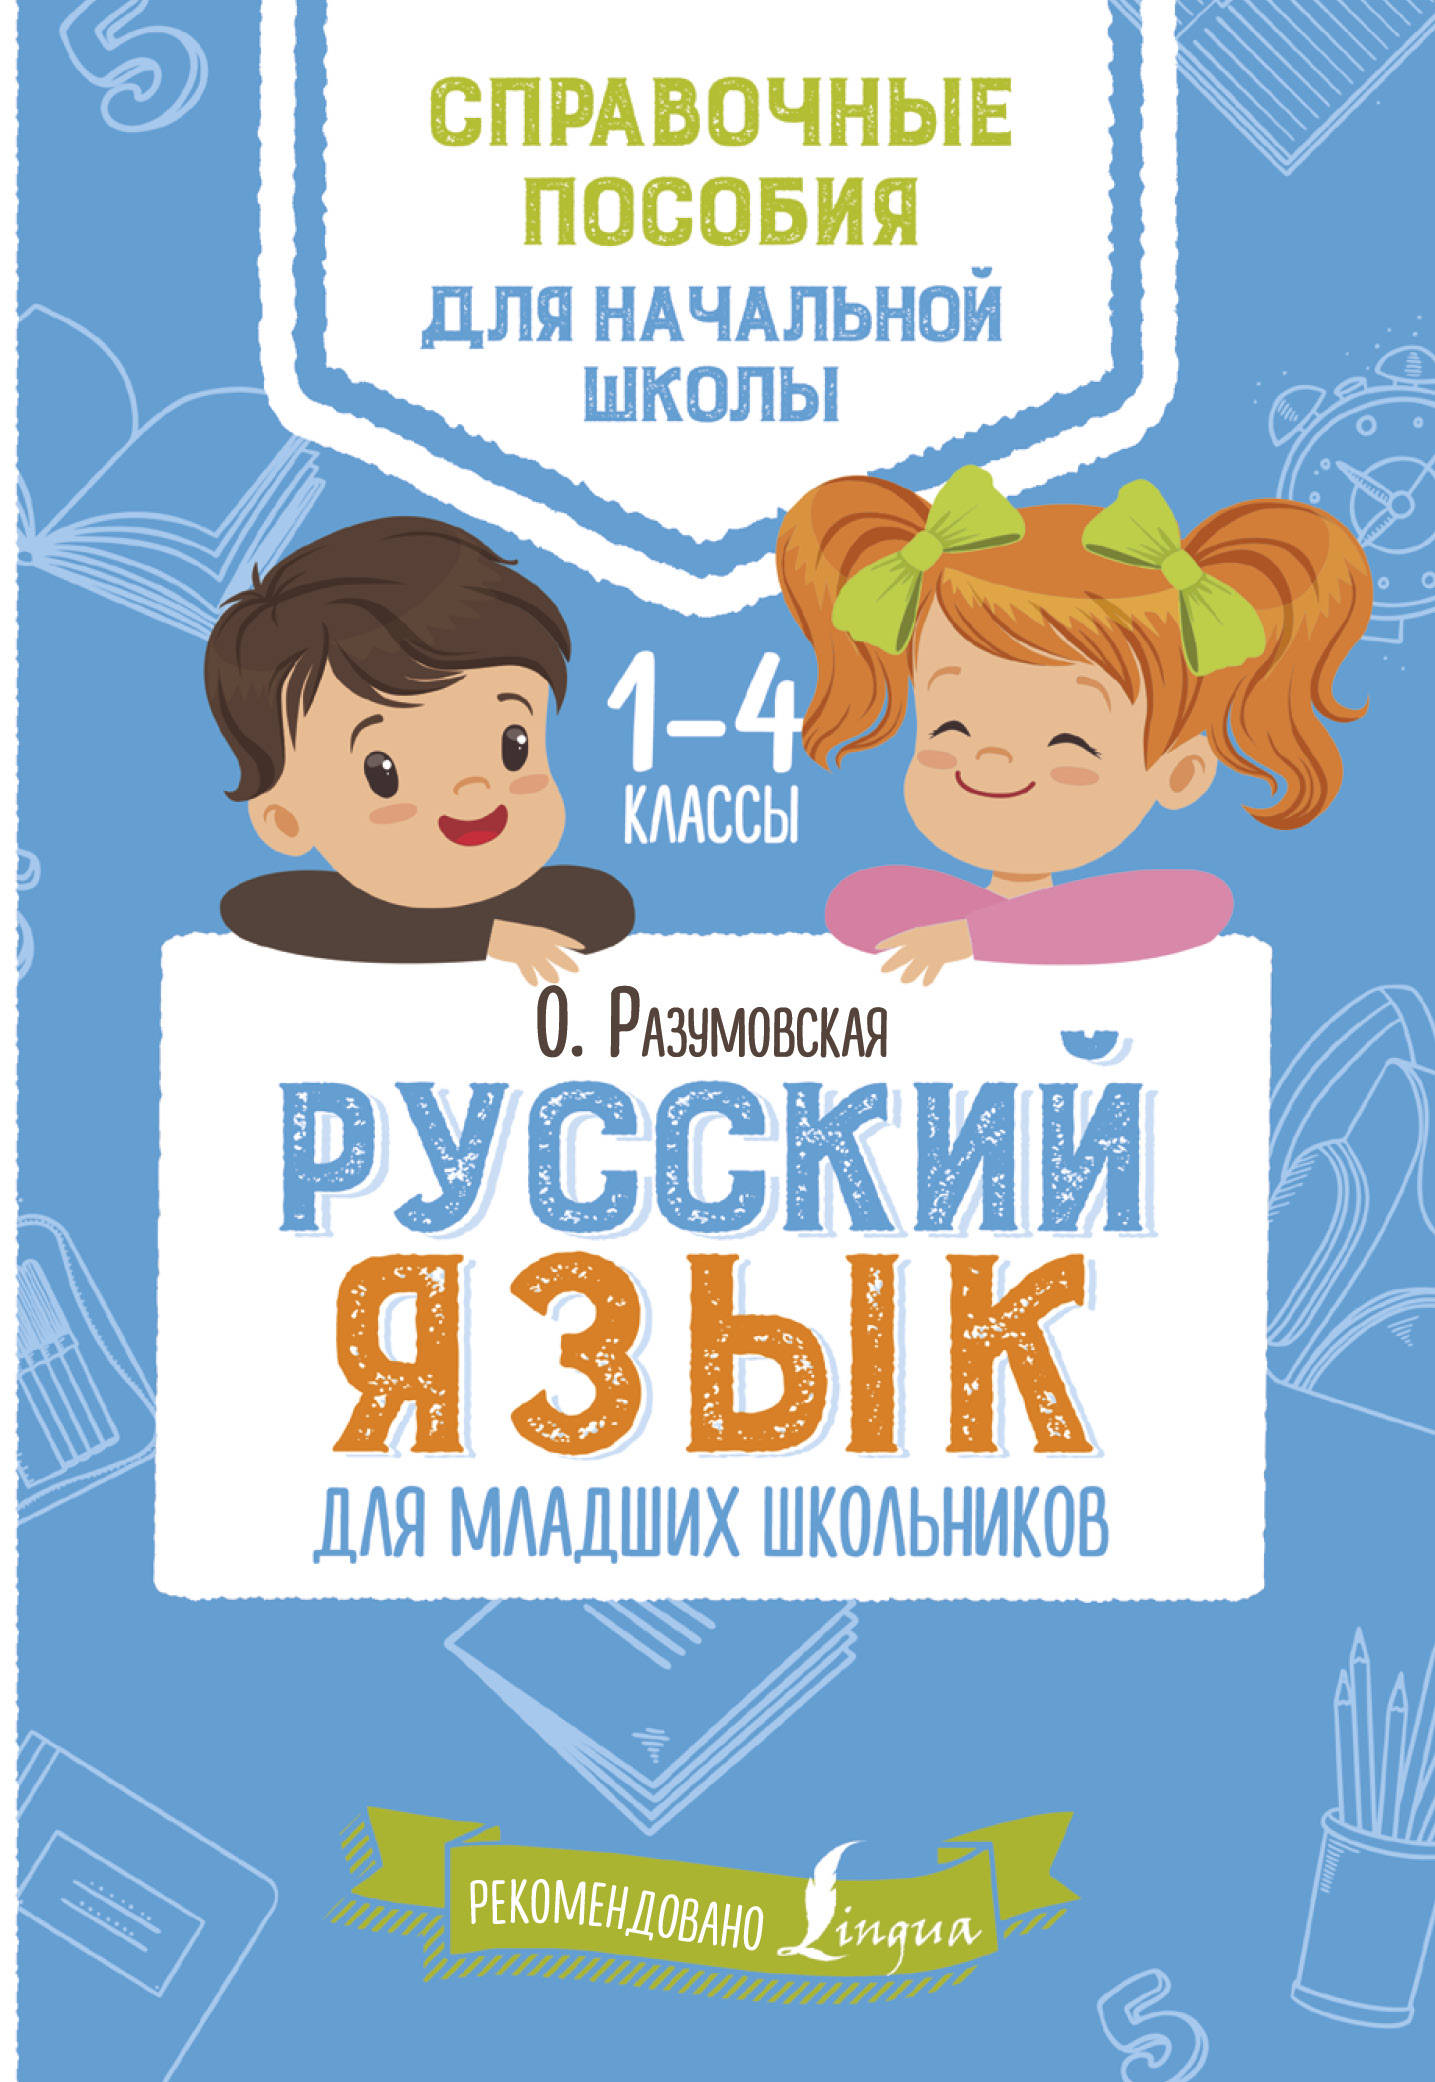 Русский язык для младших школьников. Ольга Разумовская